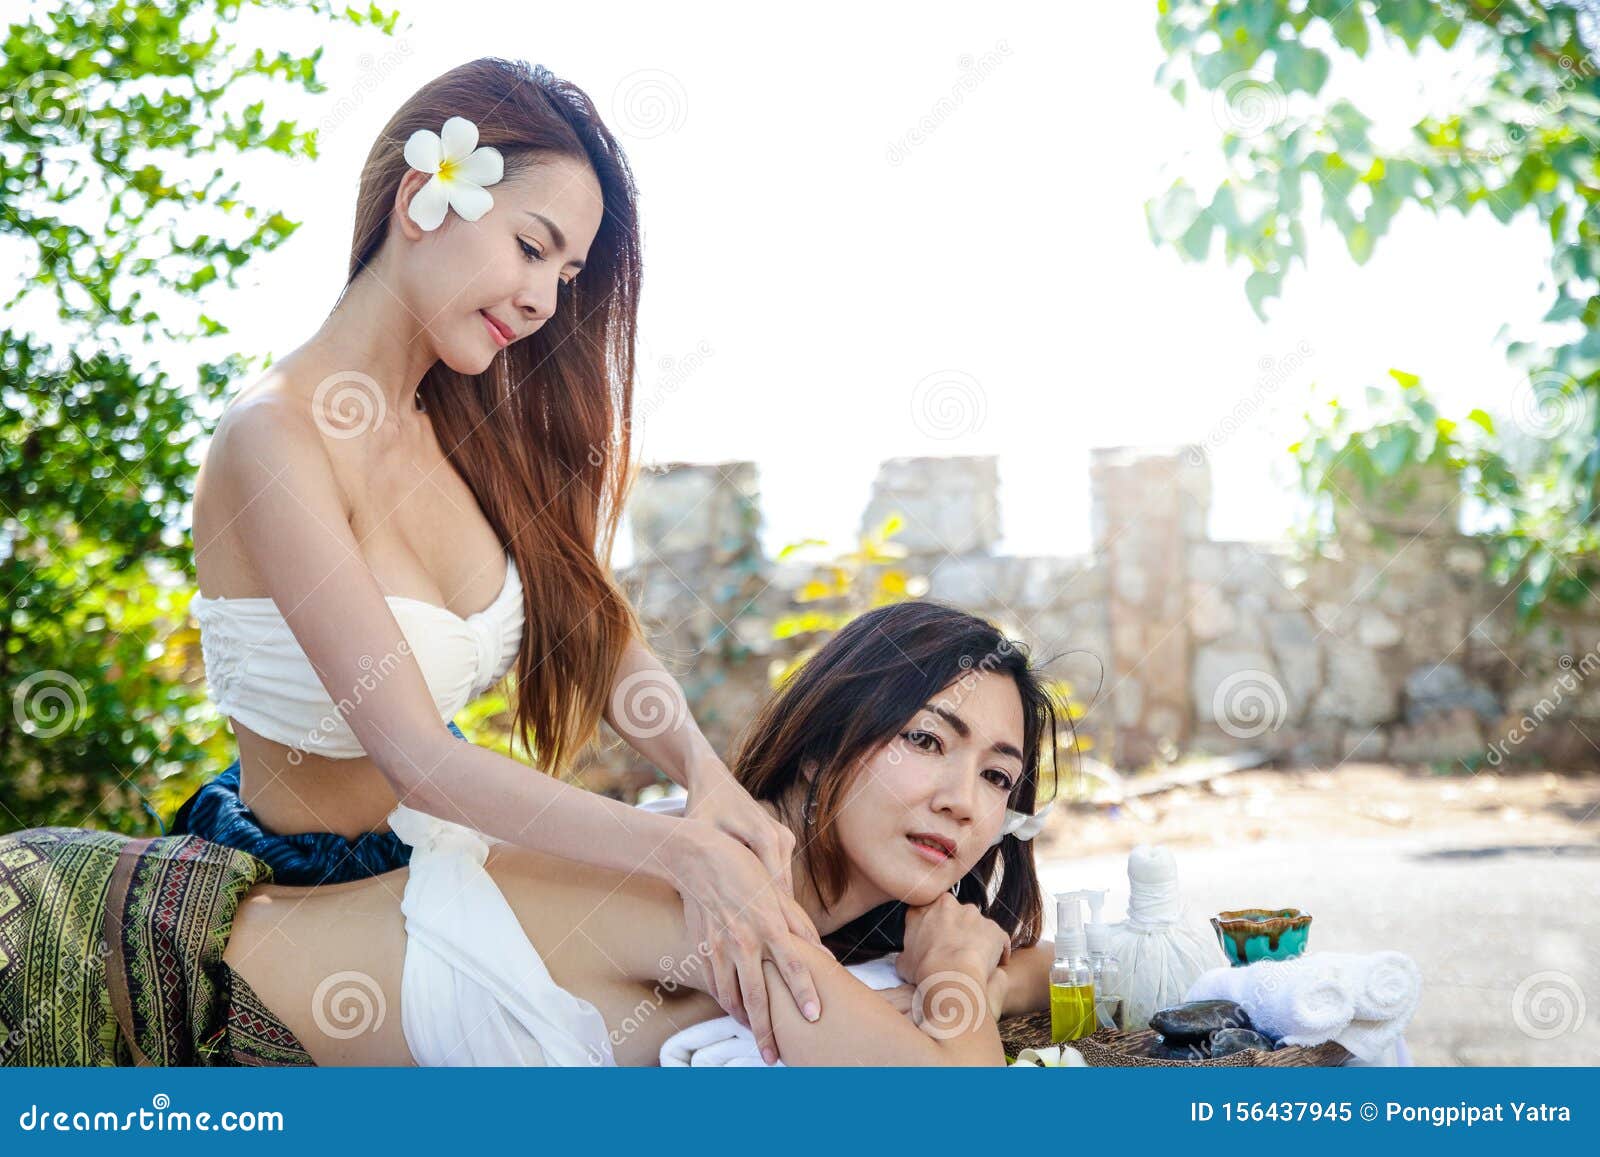 real asian massage girl girl